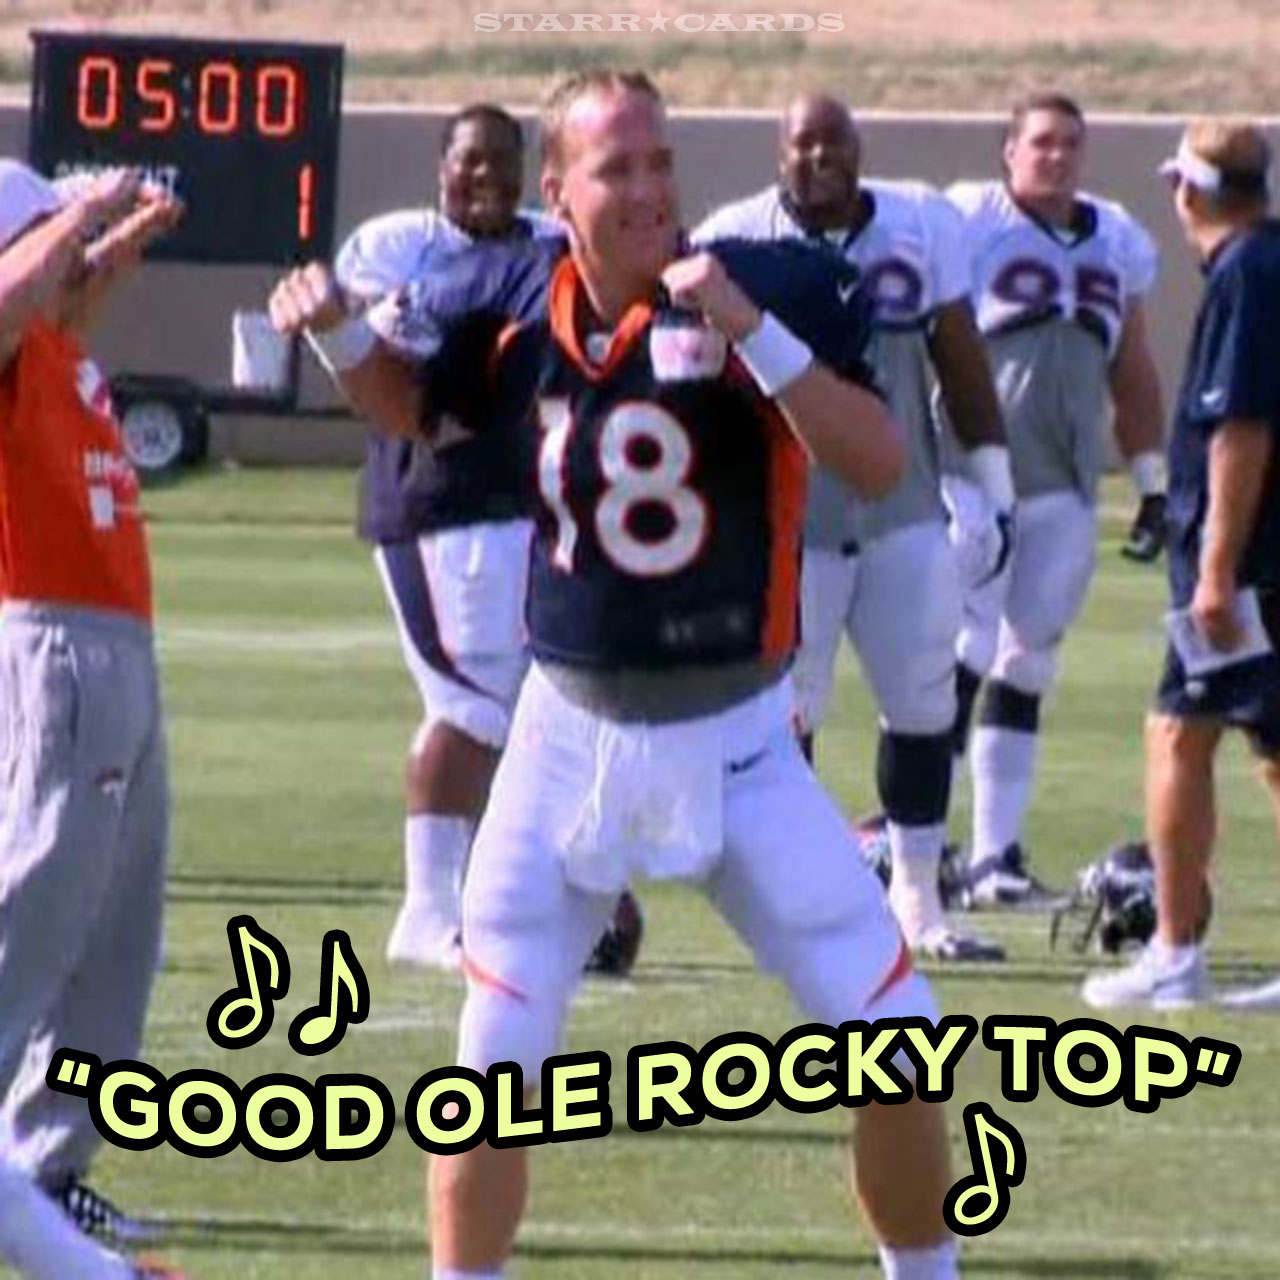 Peyton Manning dancing to "Rocky Top"